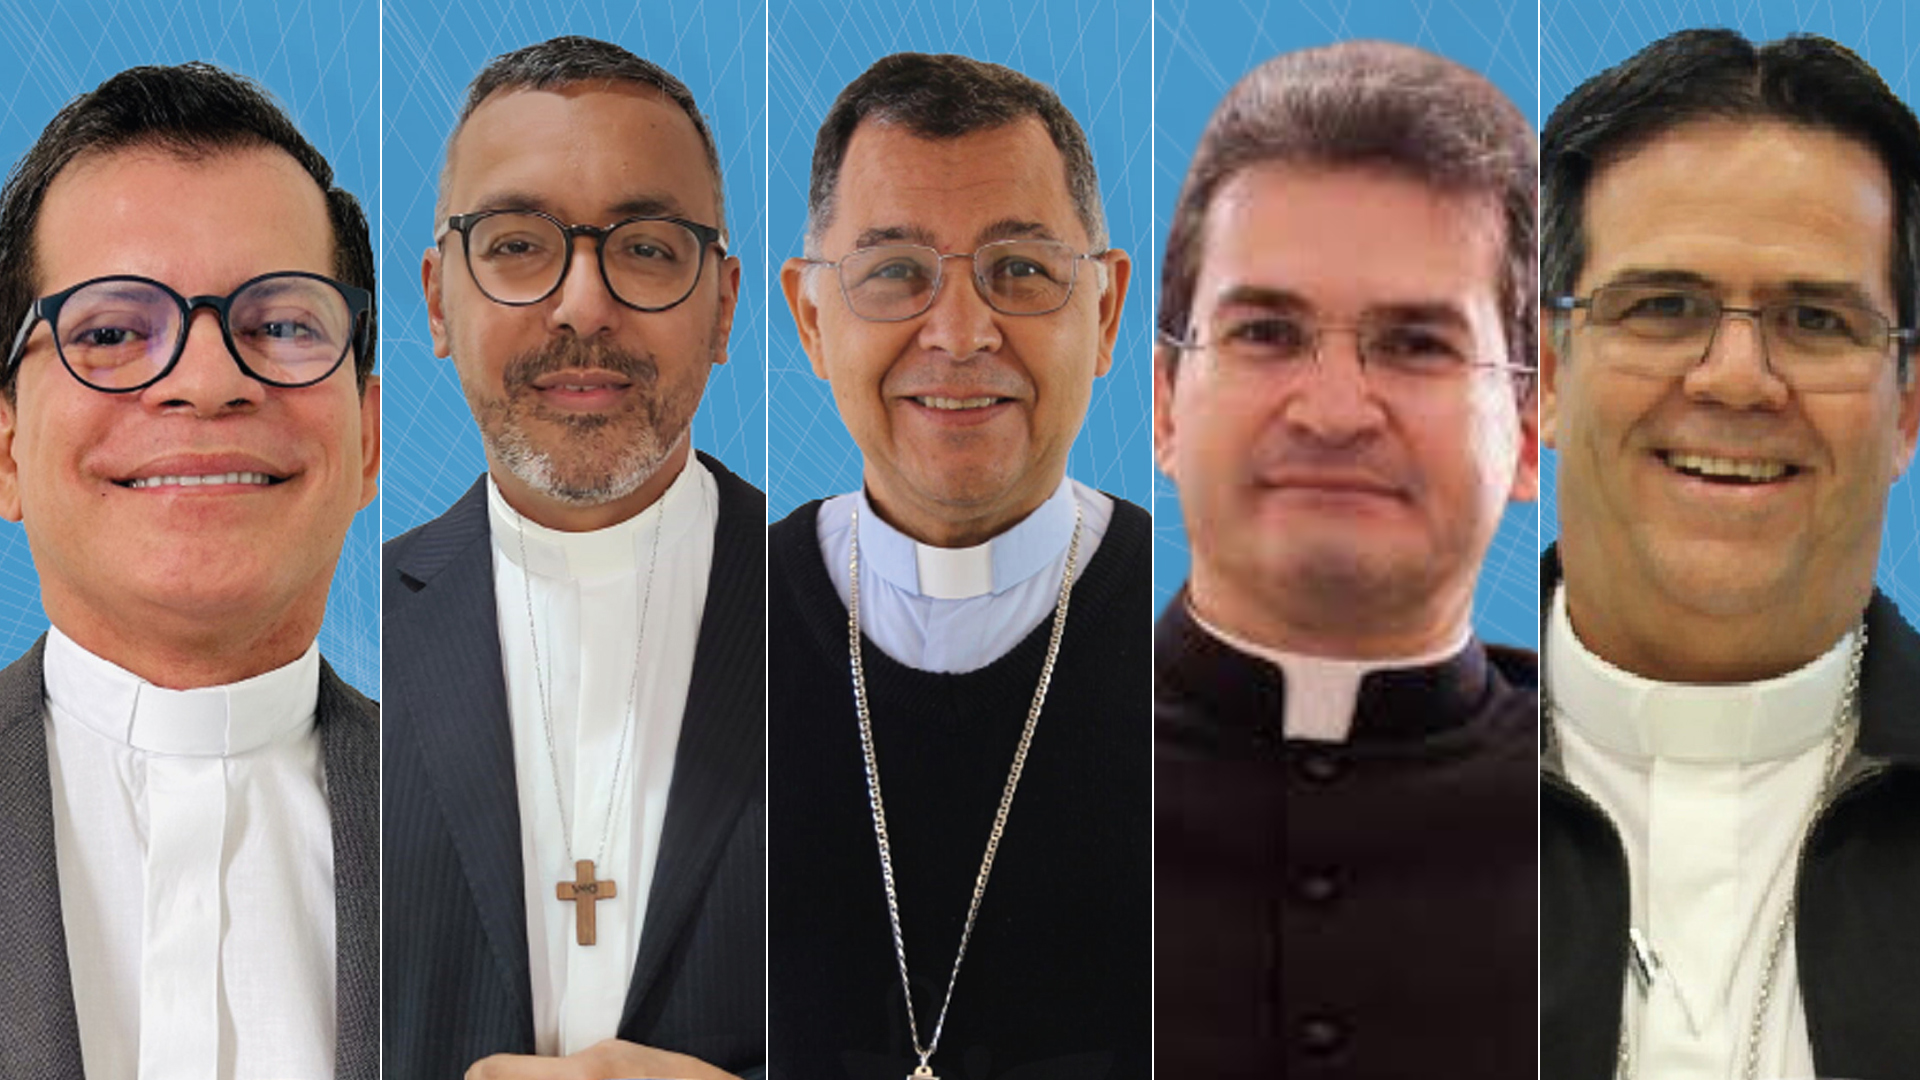 Clero - Bispo – Diocese de São Mateus